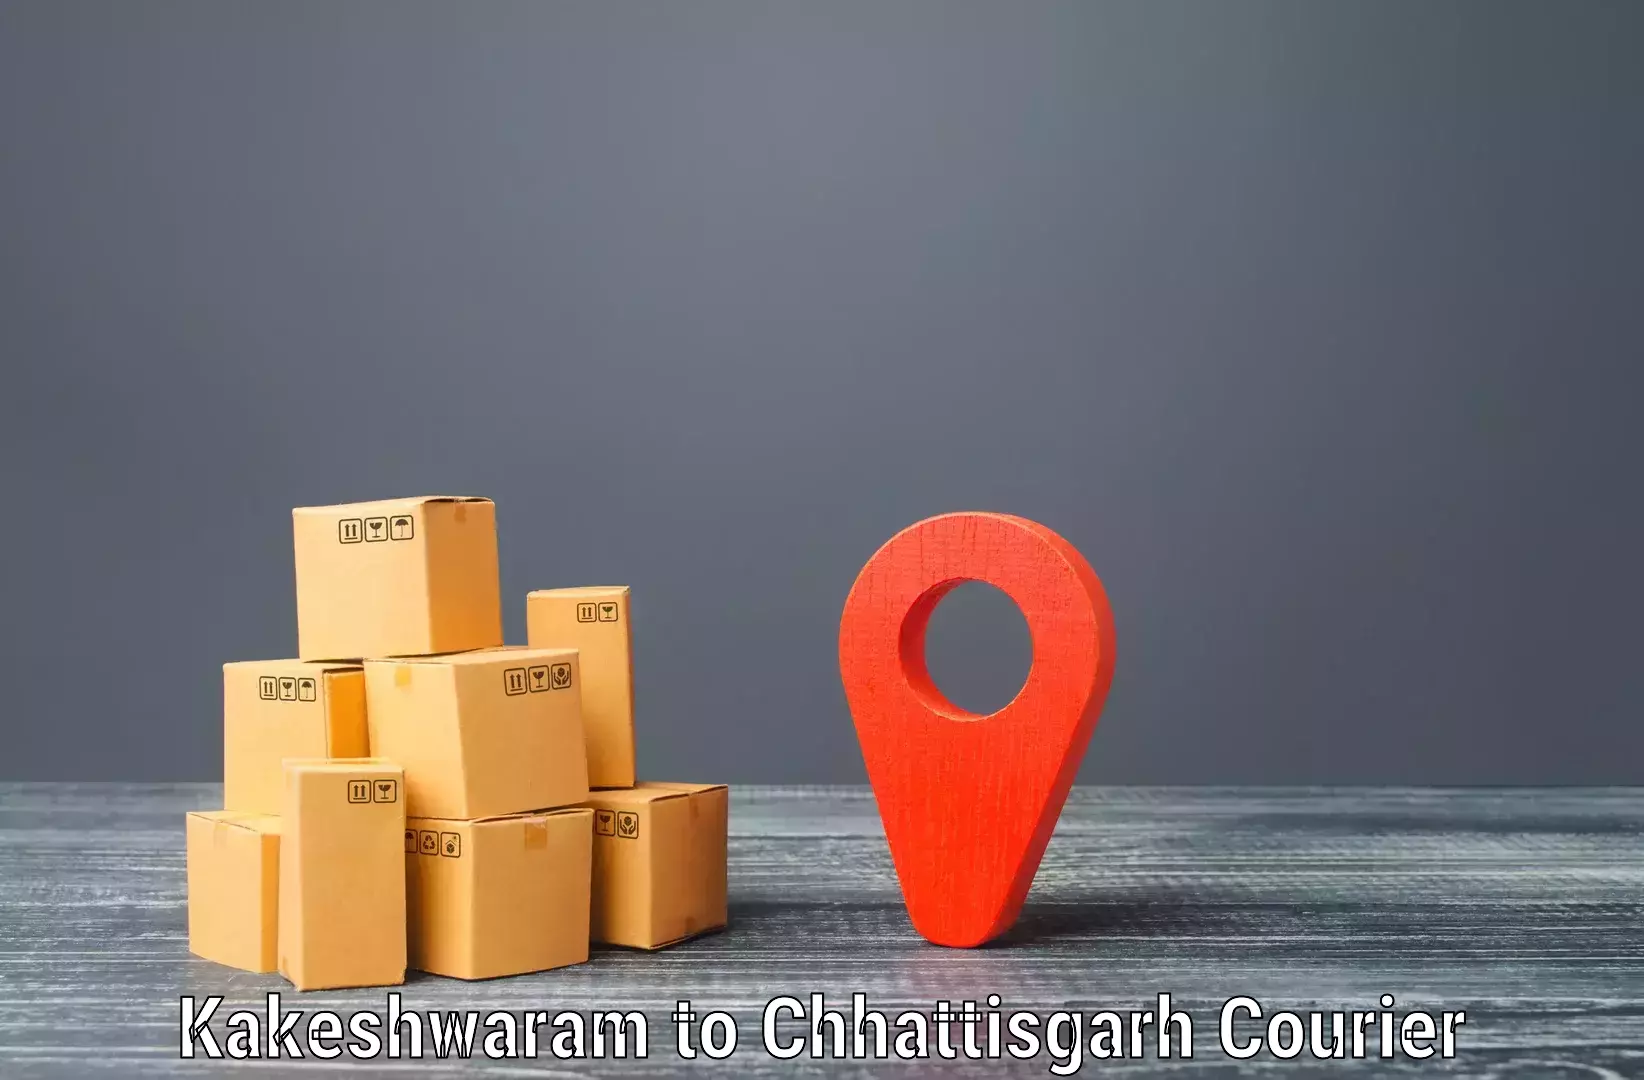 User-friendly courier app Kakeshwaram to Nagri